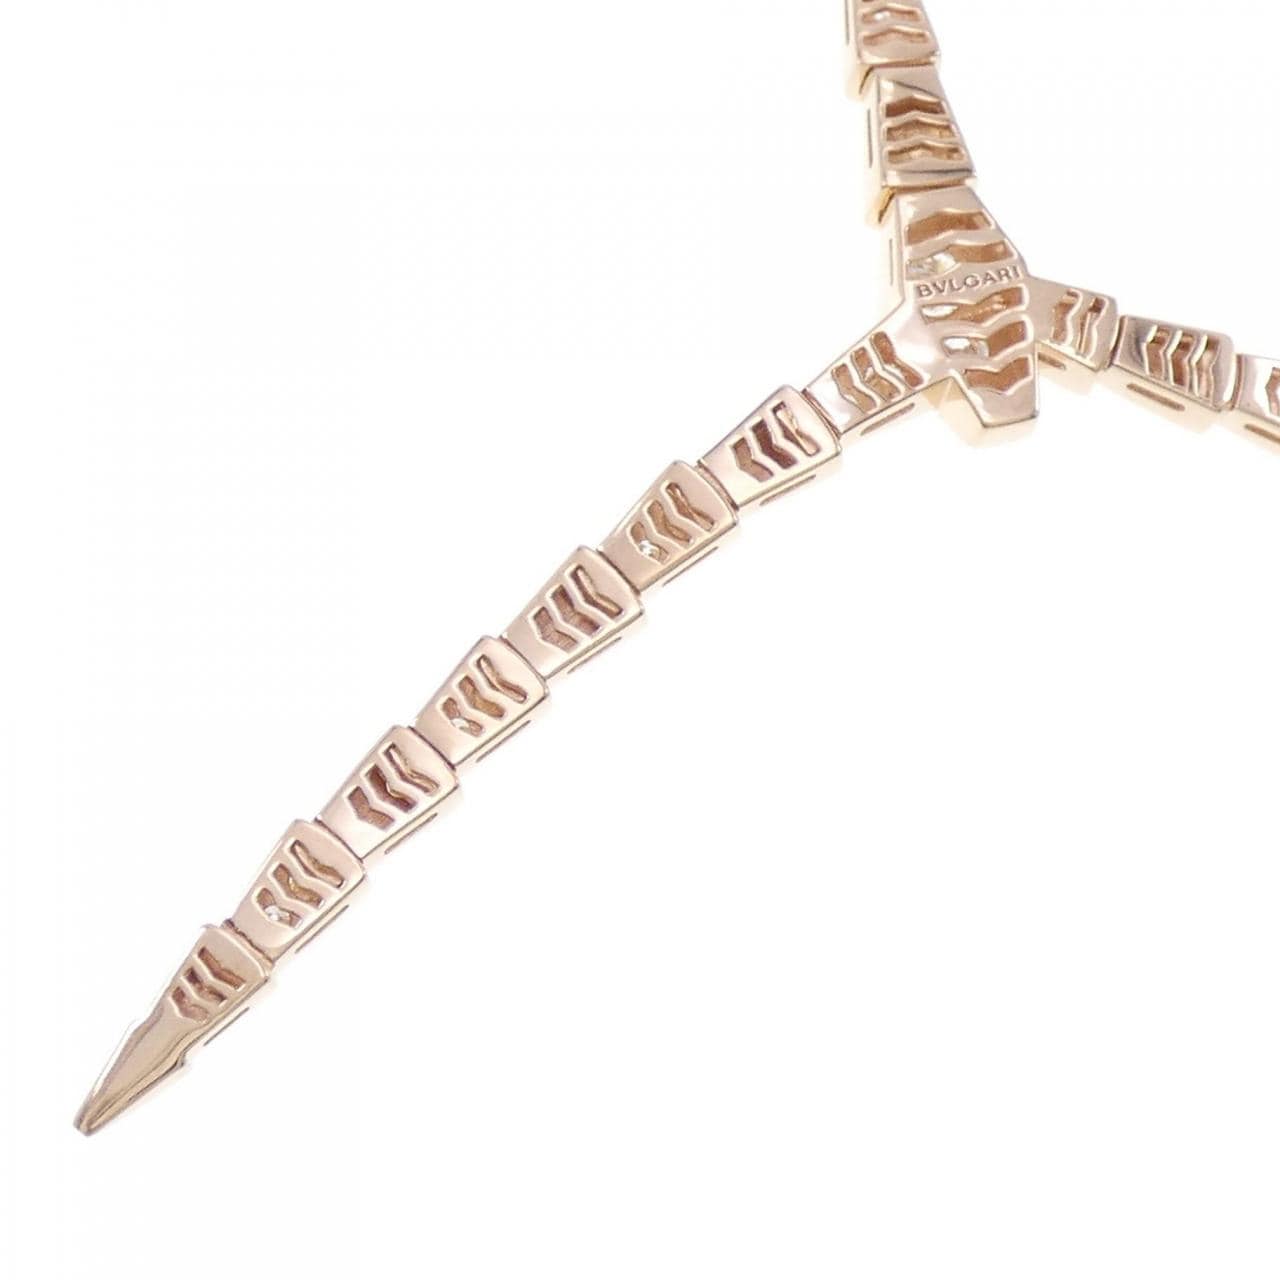 BVLGARI serpenti viper necklace